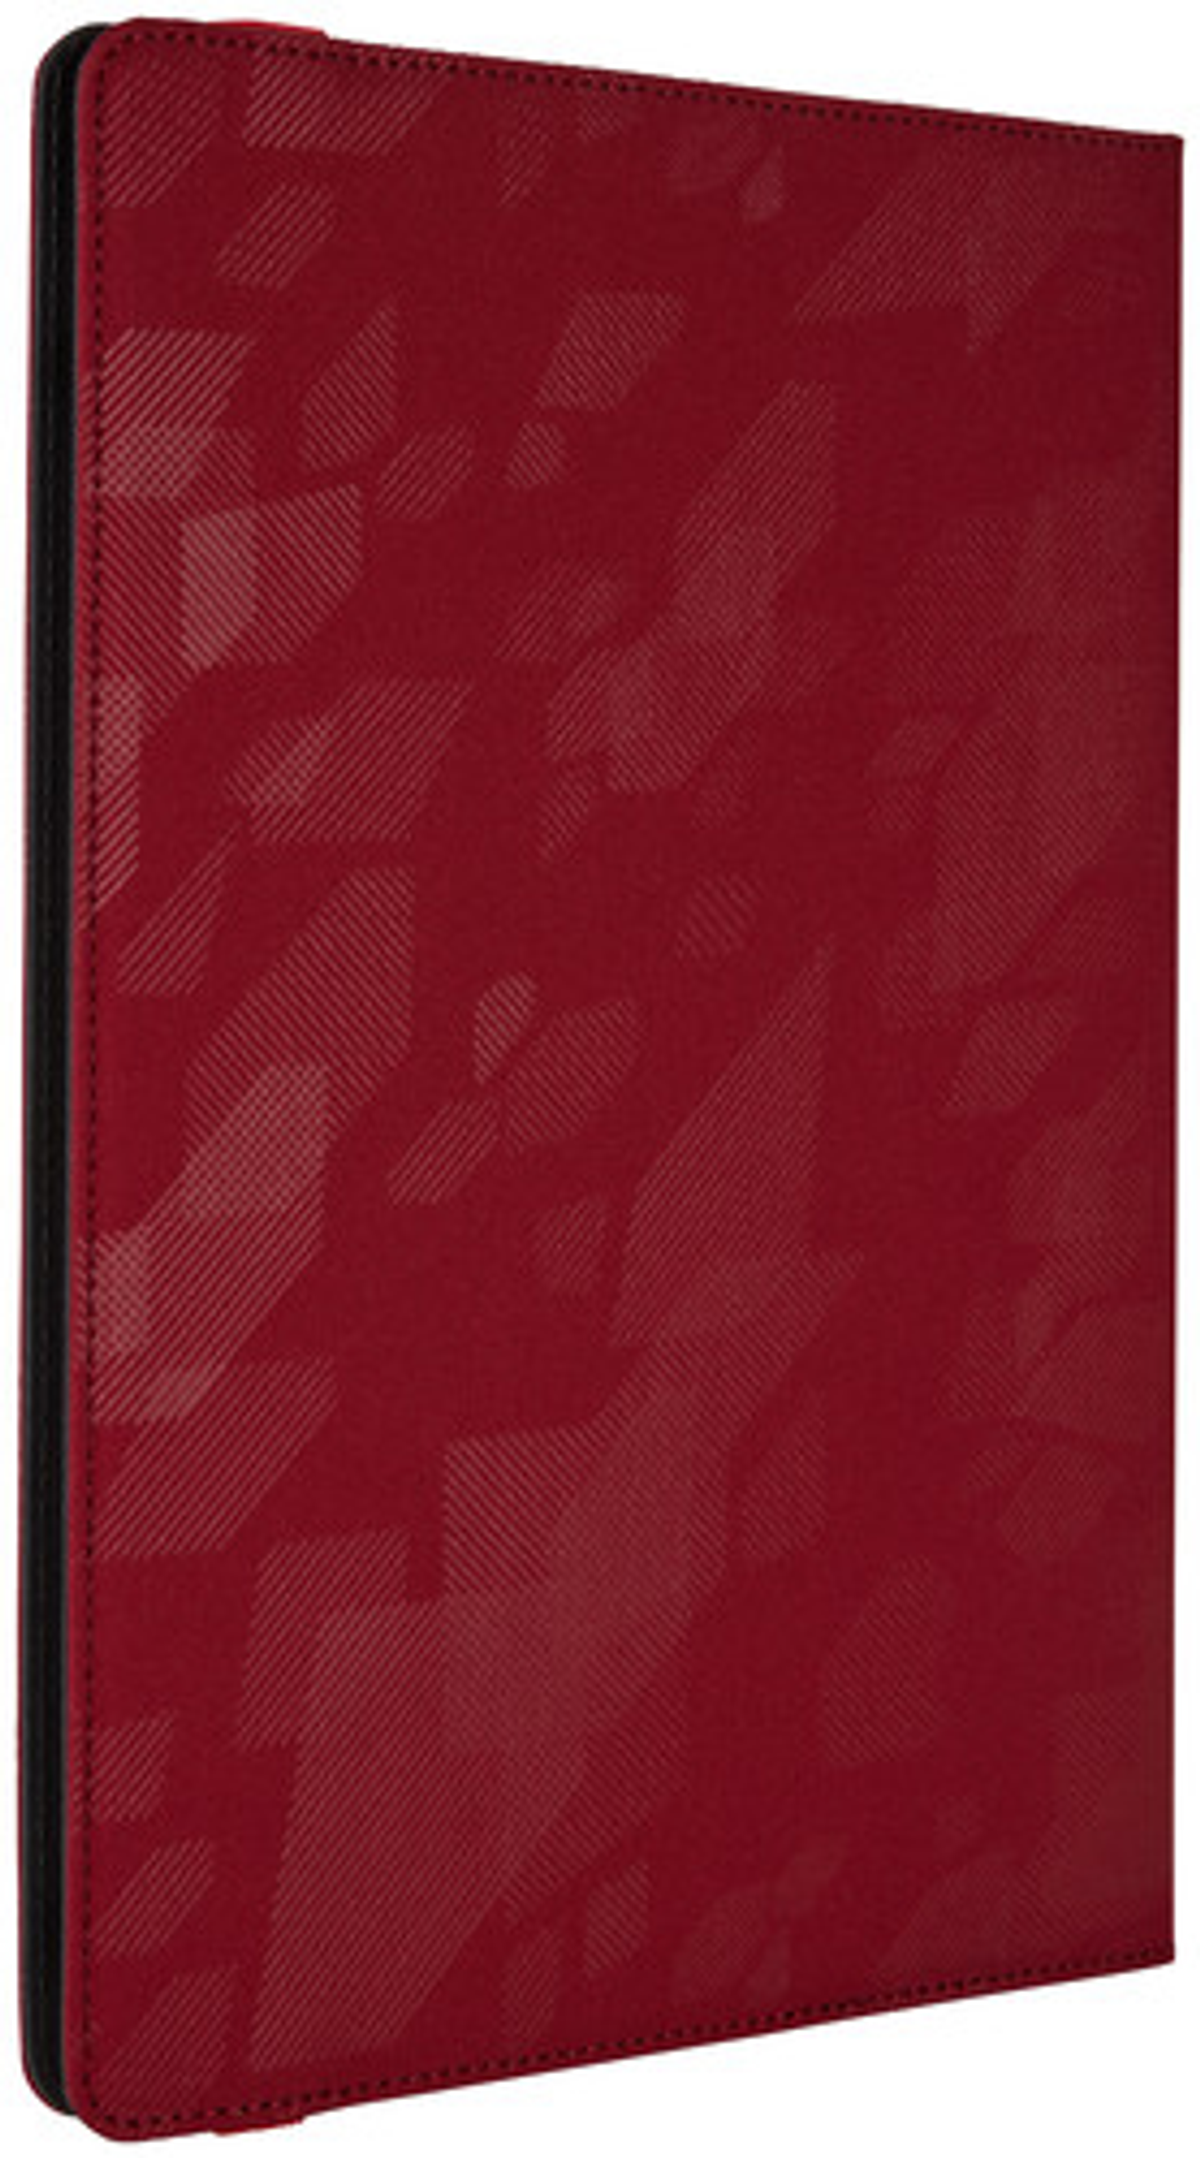 für Polyester, Boxcar CASE Folio Bookcover Universal LOGIC Bookcover